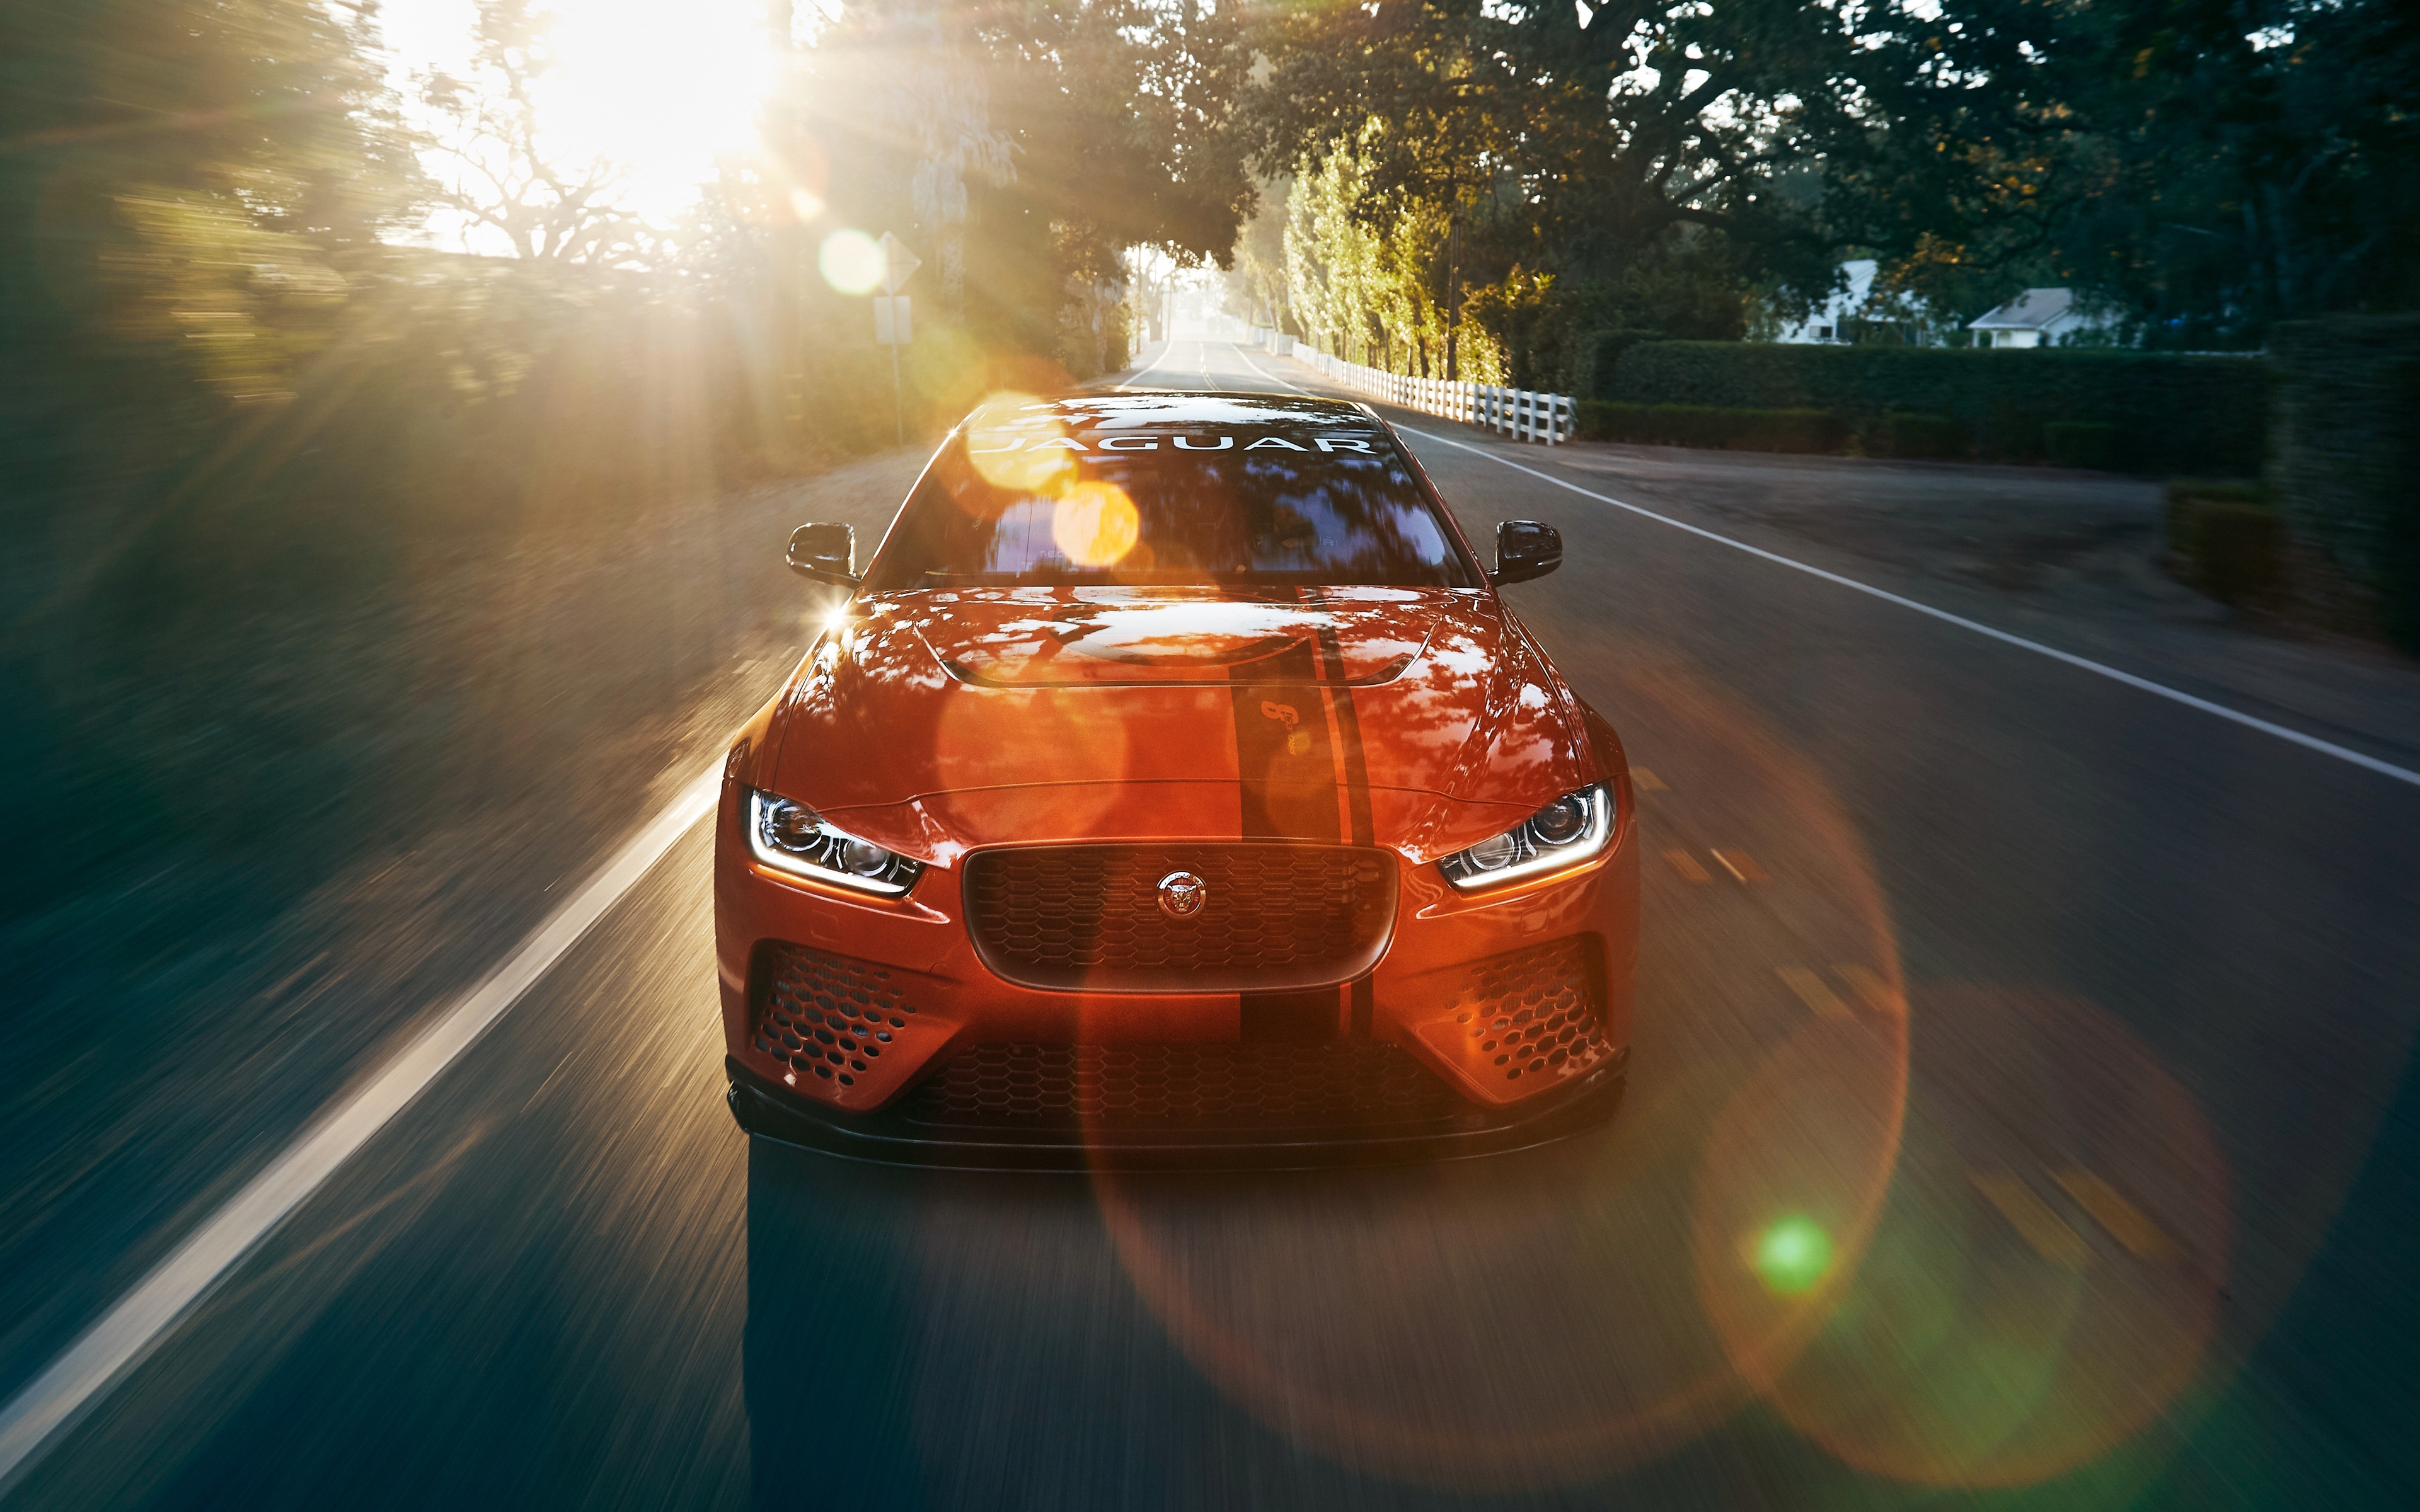 Ярко-оранжевый Jaguar XE SV Project 8 едет по дороге под солнечными лучами